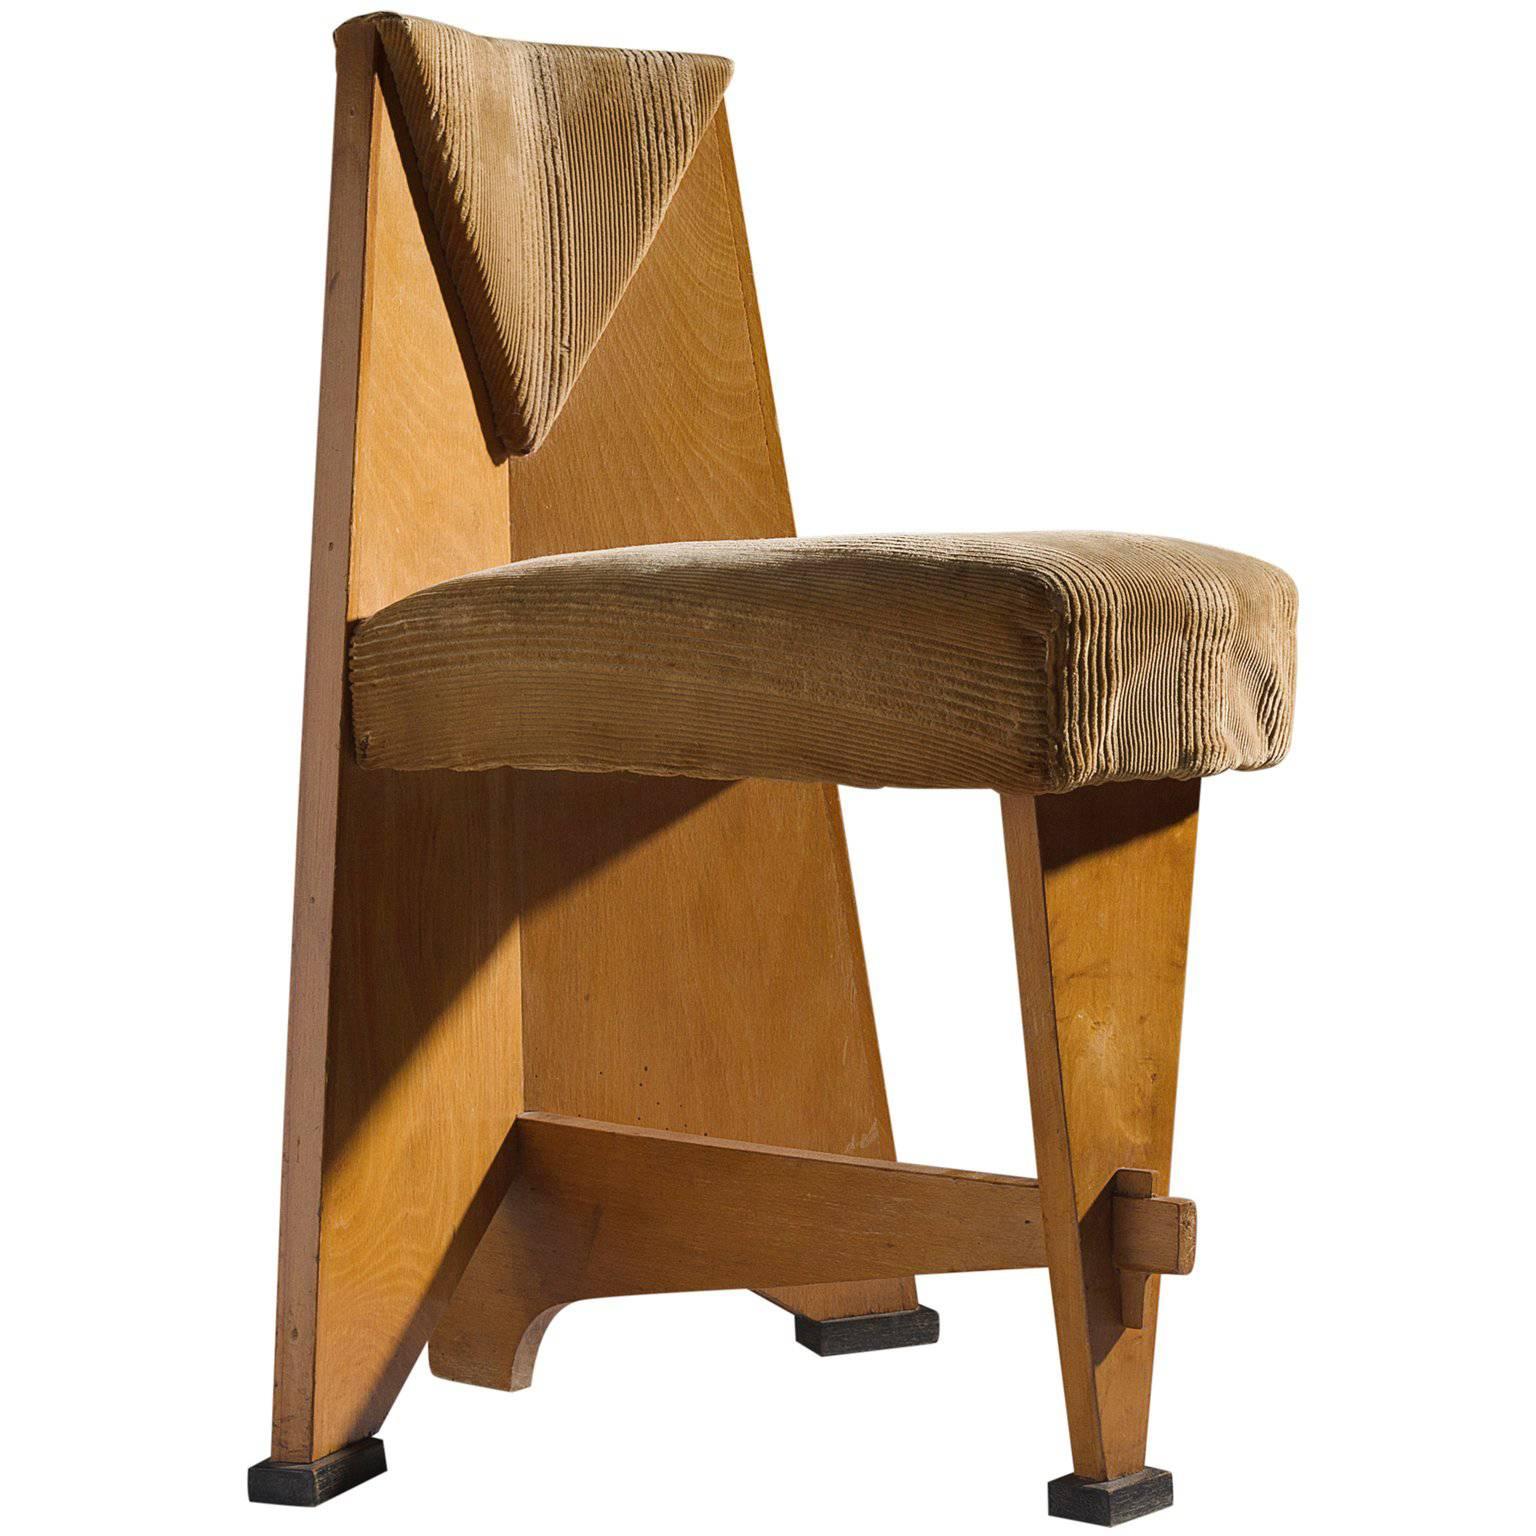 Dutch Art Deco Chair by Laurens Groen, circa 1928